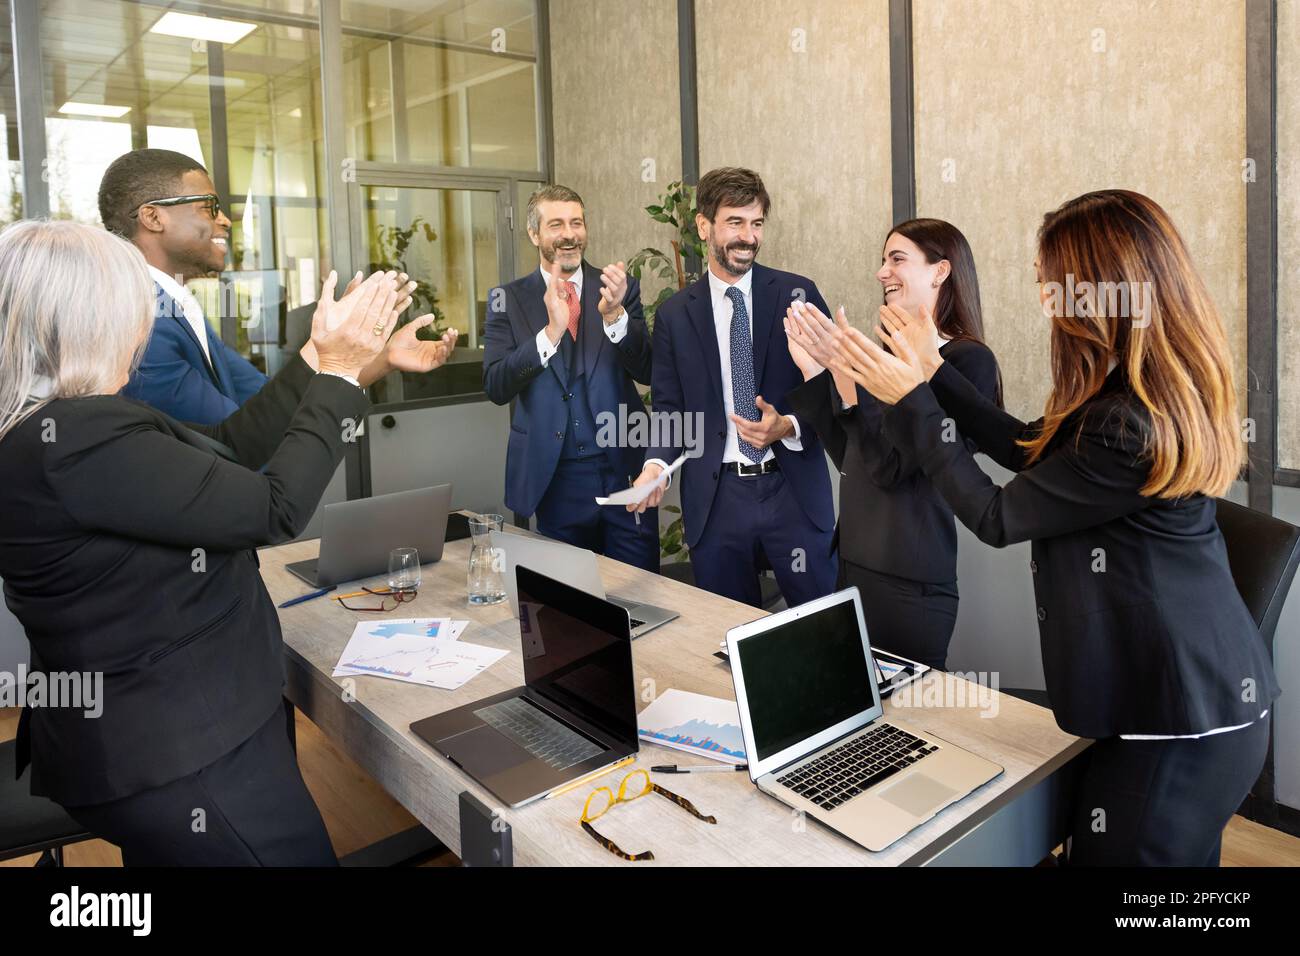 Ein Team von Geschäftsleuten verschiedener Rassen, die elegante Anzüge tragen, versammeln sich mit Laptops im Konferenzraum und applaudieren nach einem erfolgreichen Meeting Stockfoto